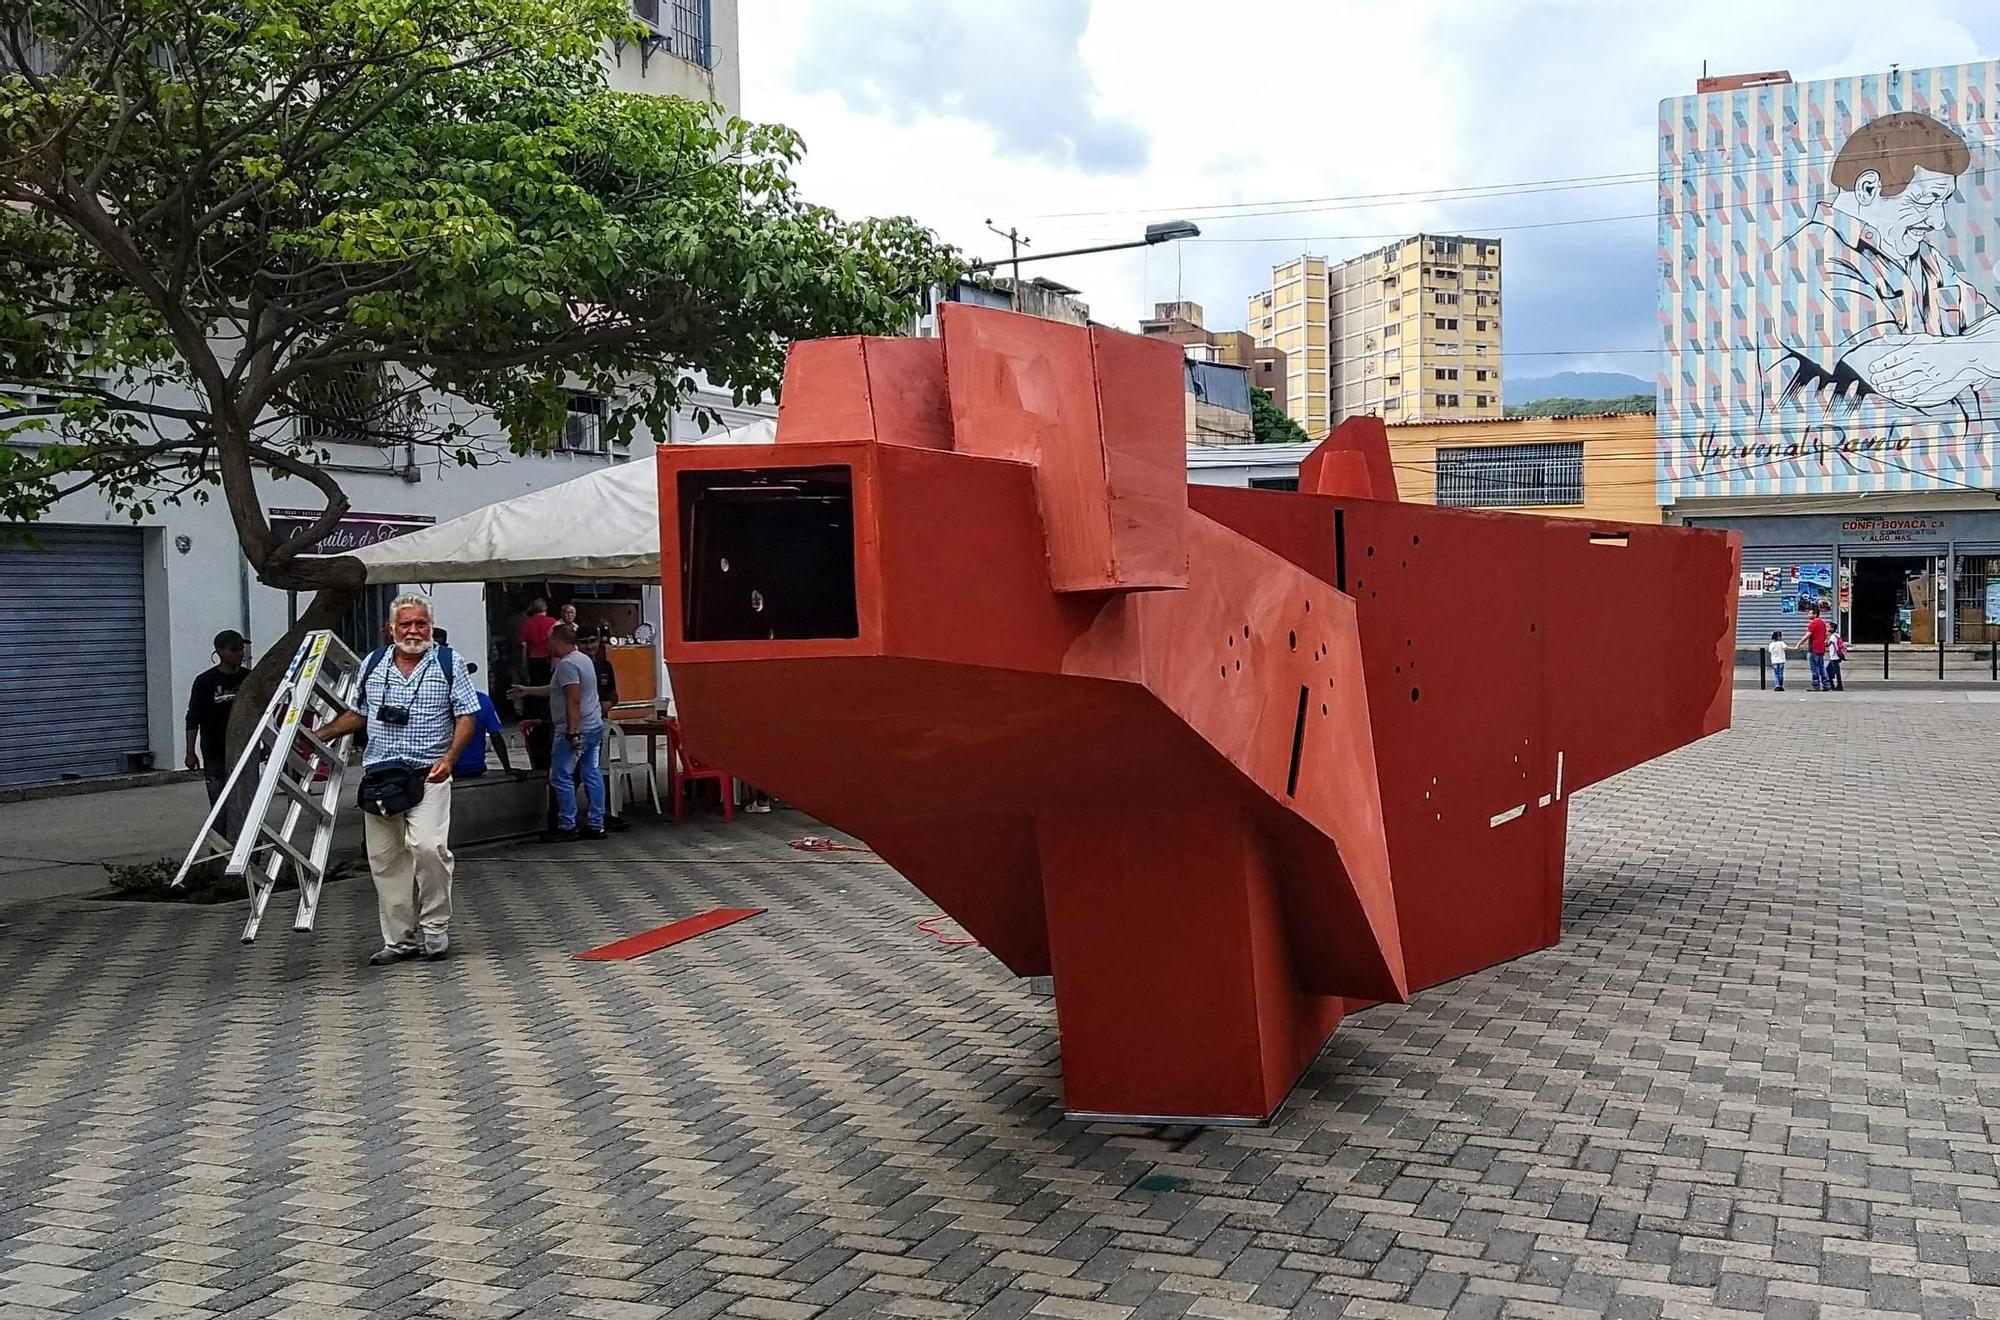 Galeria de fotos: Pep Admetlla aixeca una biblioteca de la memòria  en una avinguda veneçolana